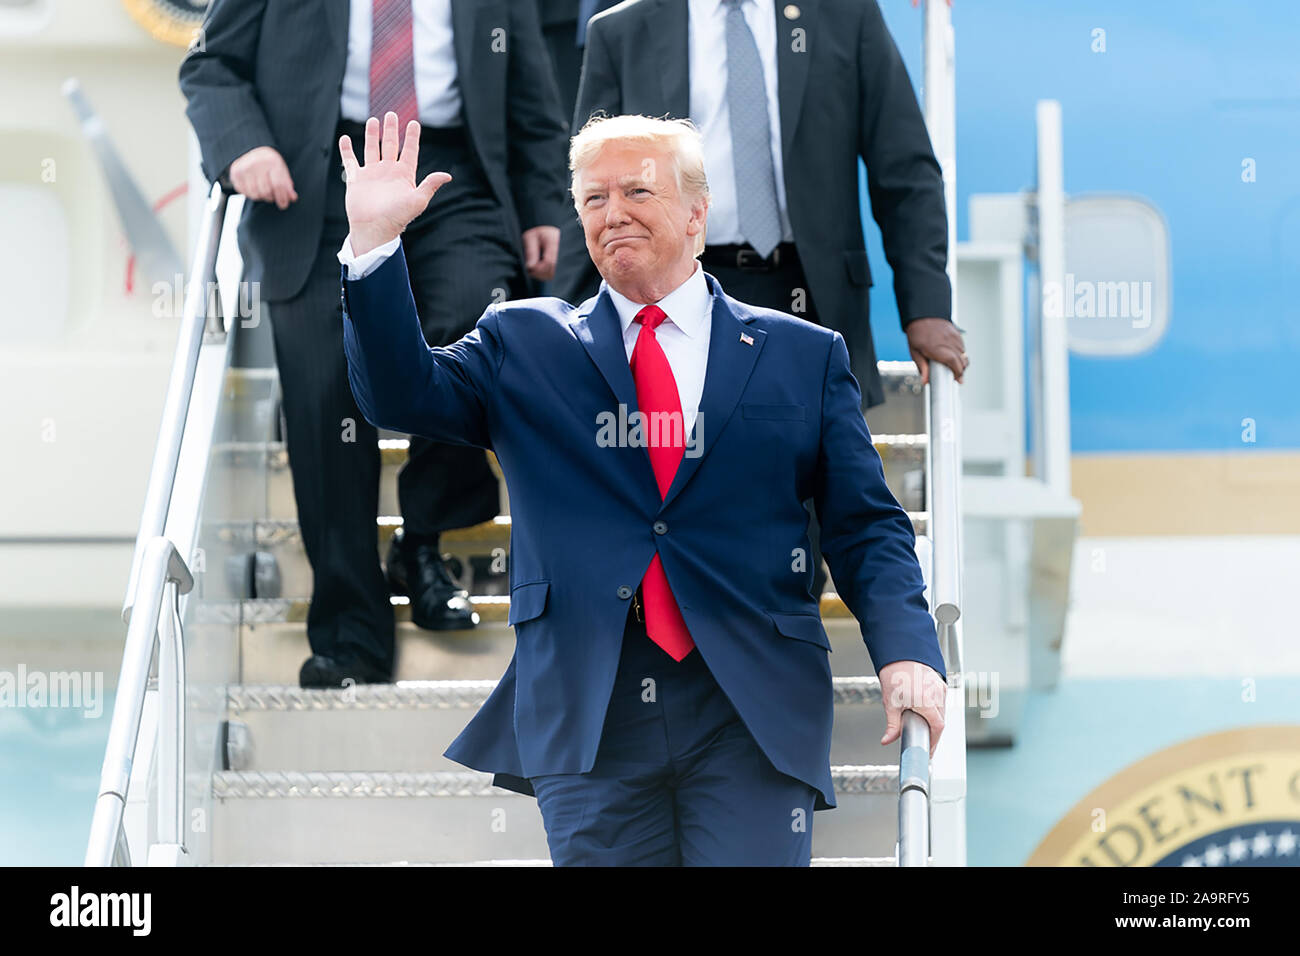 Le président Donald J. Trump débarque l'Air Force One à l'aéroport métropolitain de Columbia en Colombie-Britannique, L.C. Vendredi, Octobre 25, 2019, tel qu'il est accueilli par les collectivités locales et les fonctionnaires de l'état. Banque D'Images